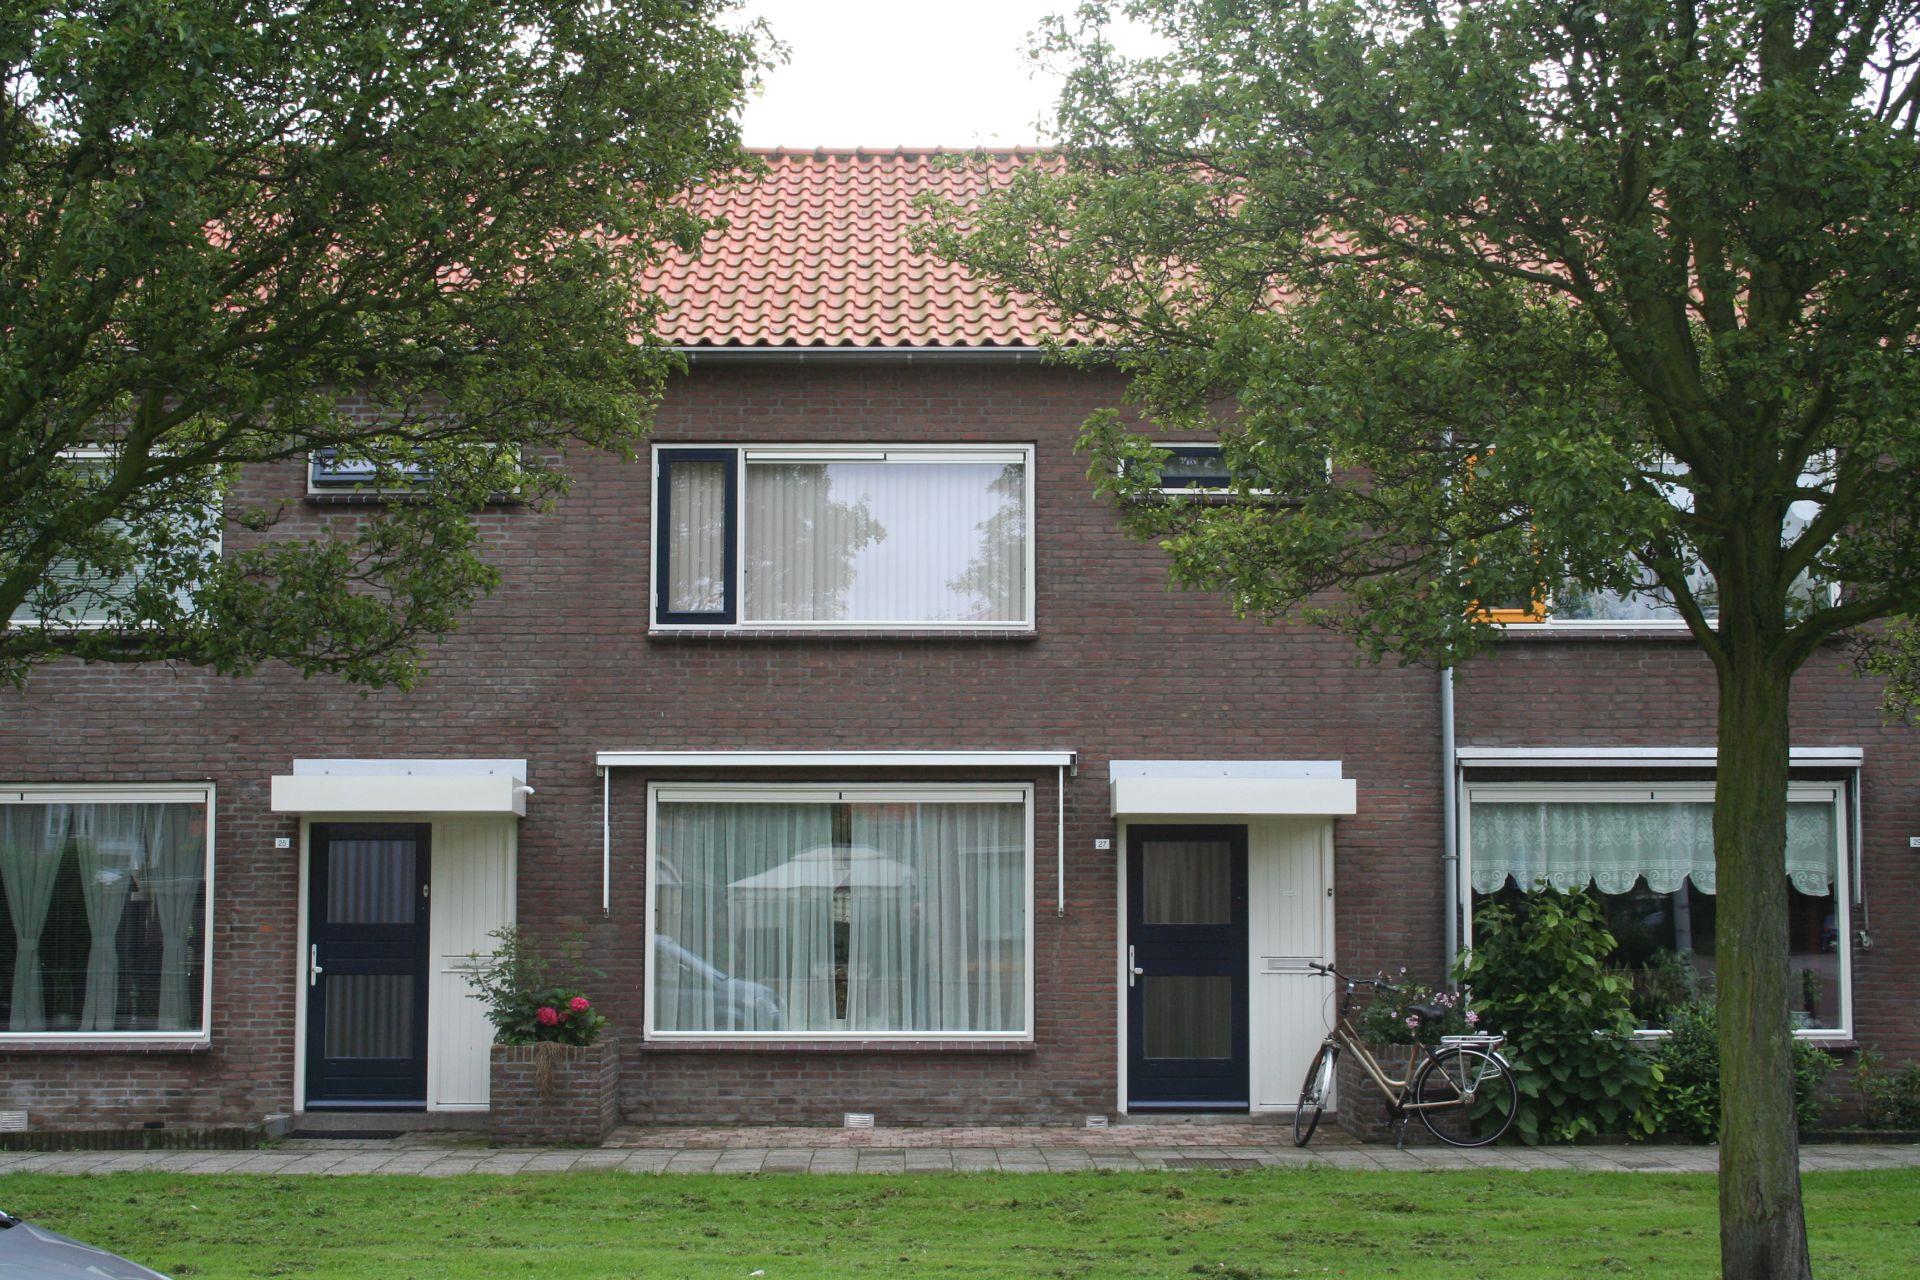 Abelenlaan 157, 3181 WD Rozenburg, Nederland